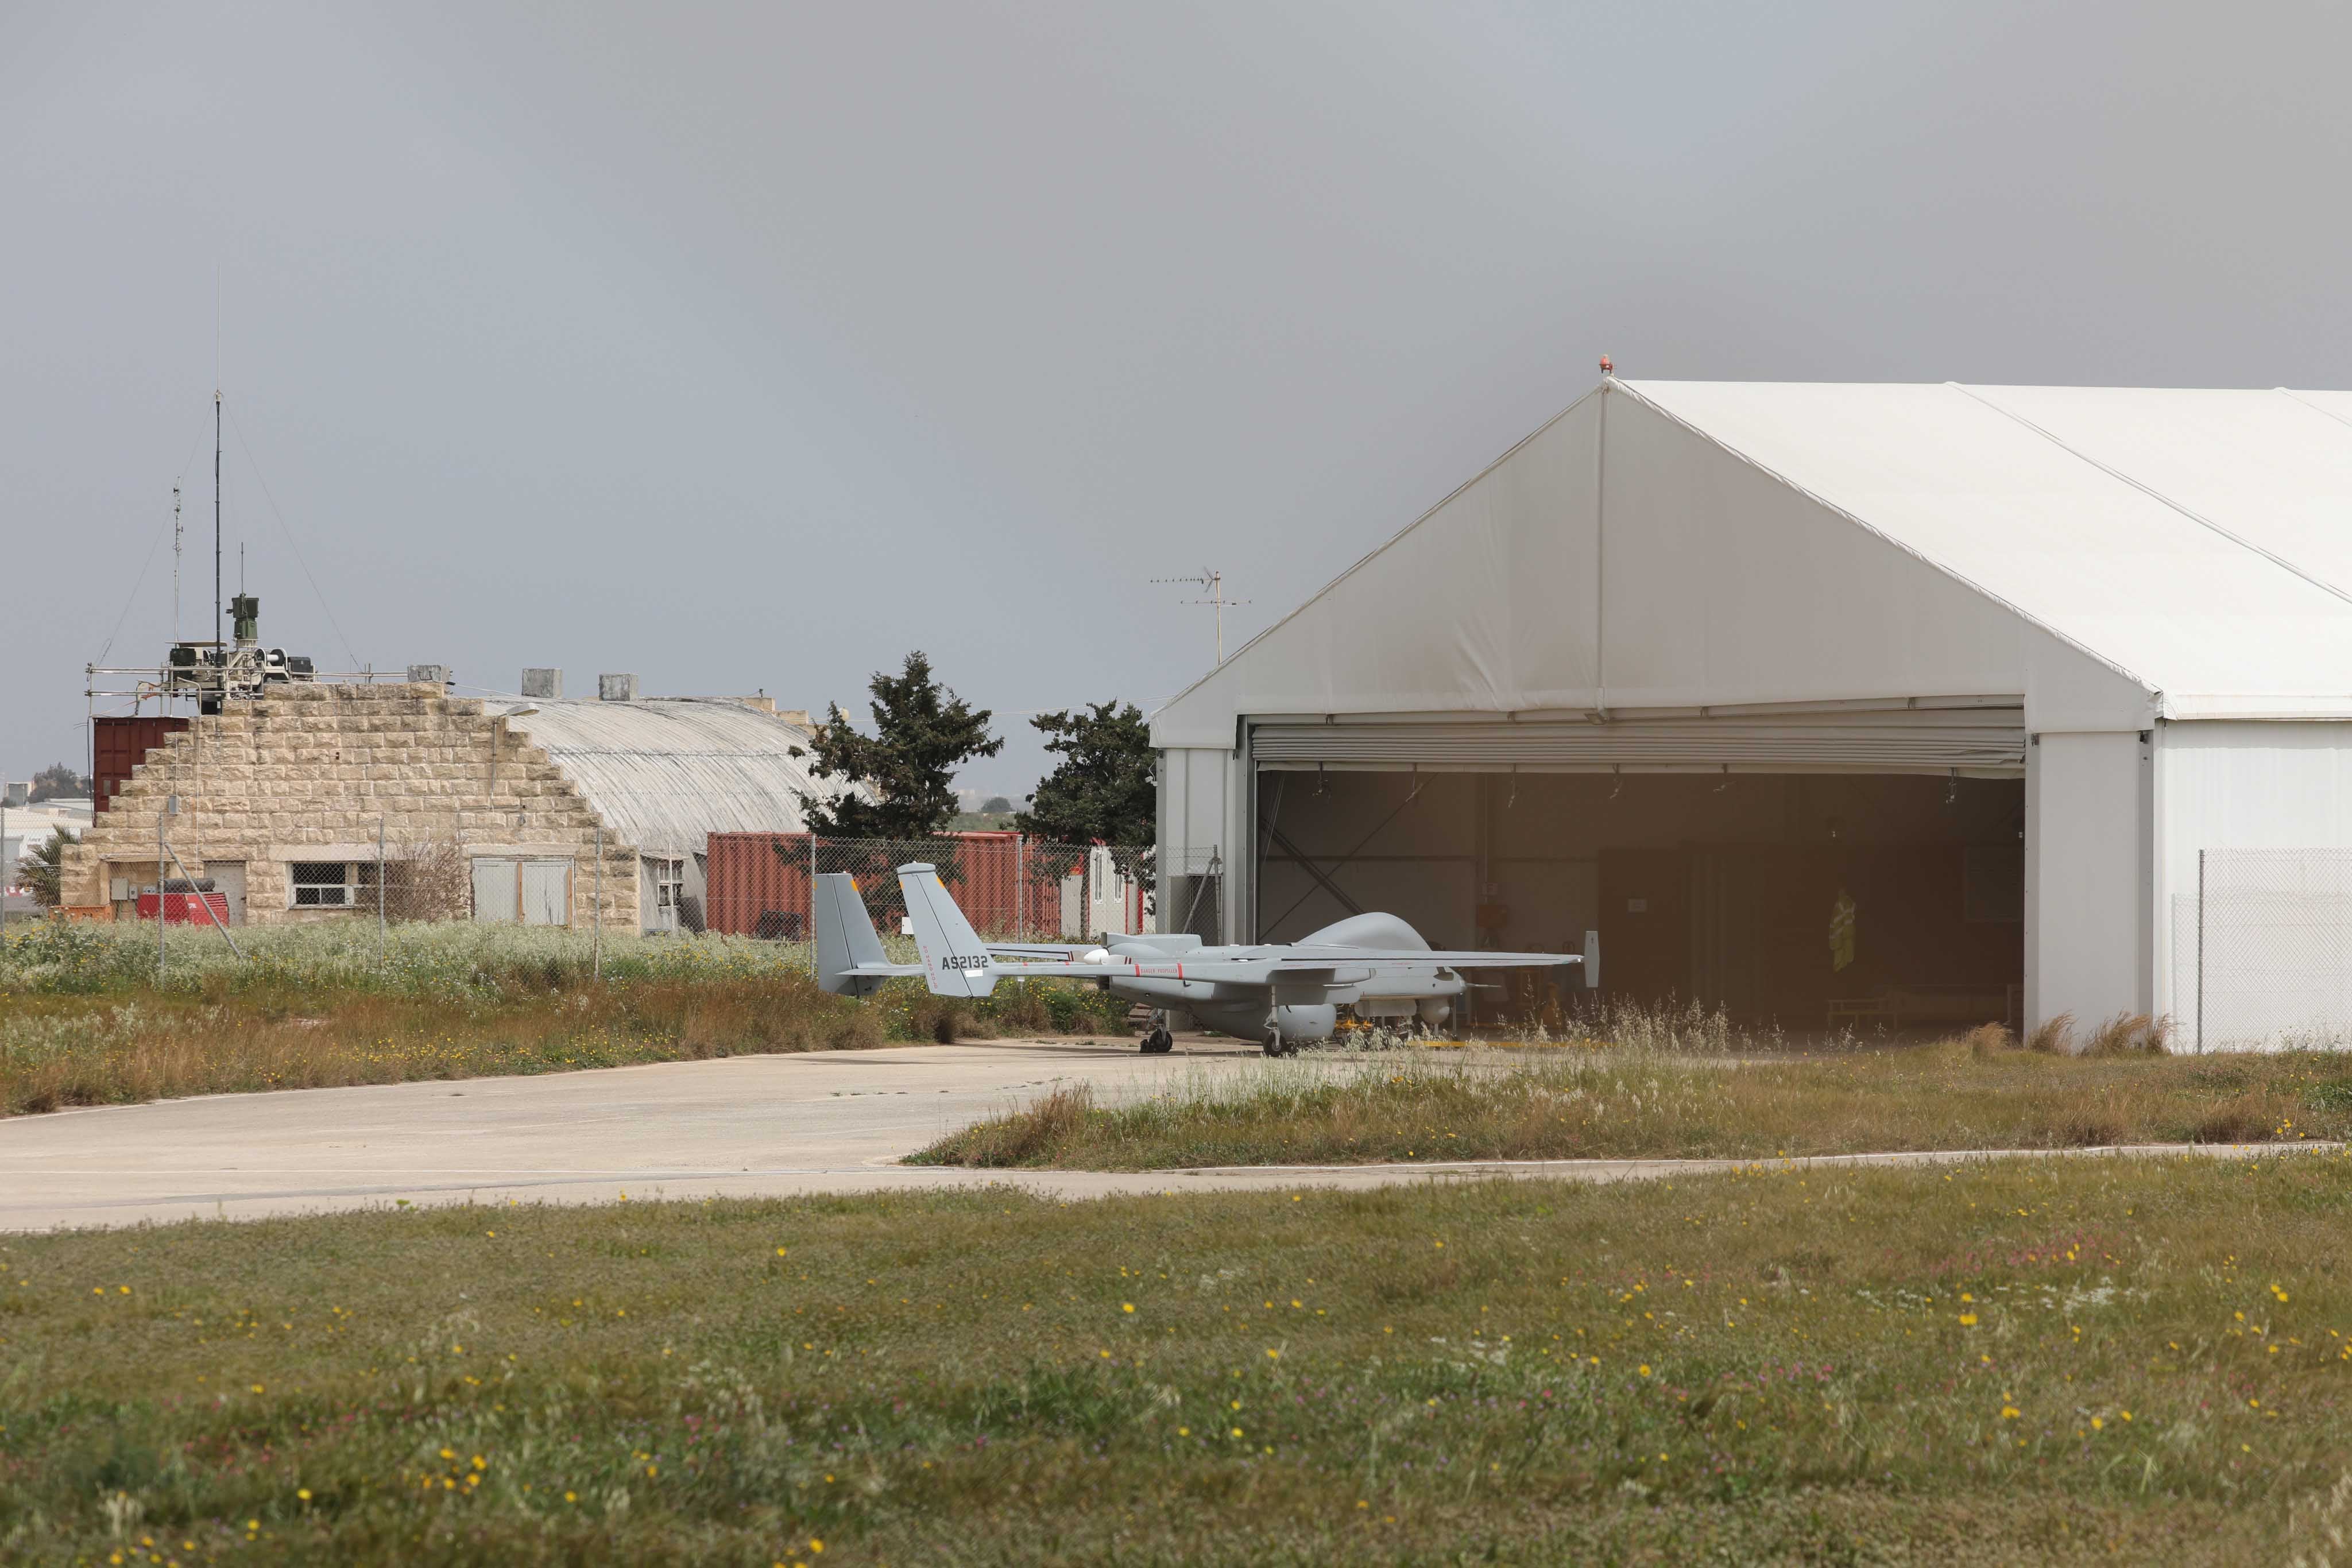 المسيّرة "فرونتكس" المستخدمة للمراقبة في وسط البحر المتوسط أمام هنغارها في "مطار مالطا الدولي"، مالطا. 